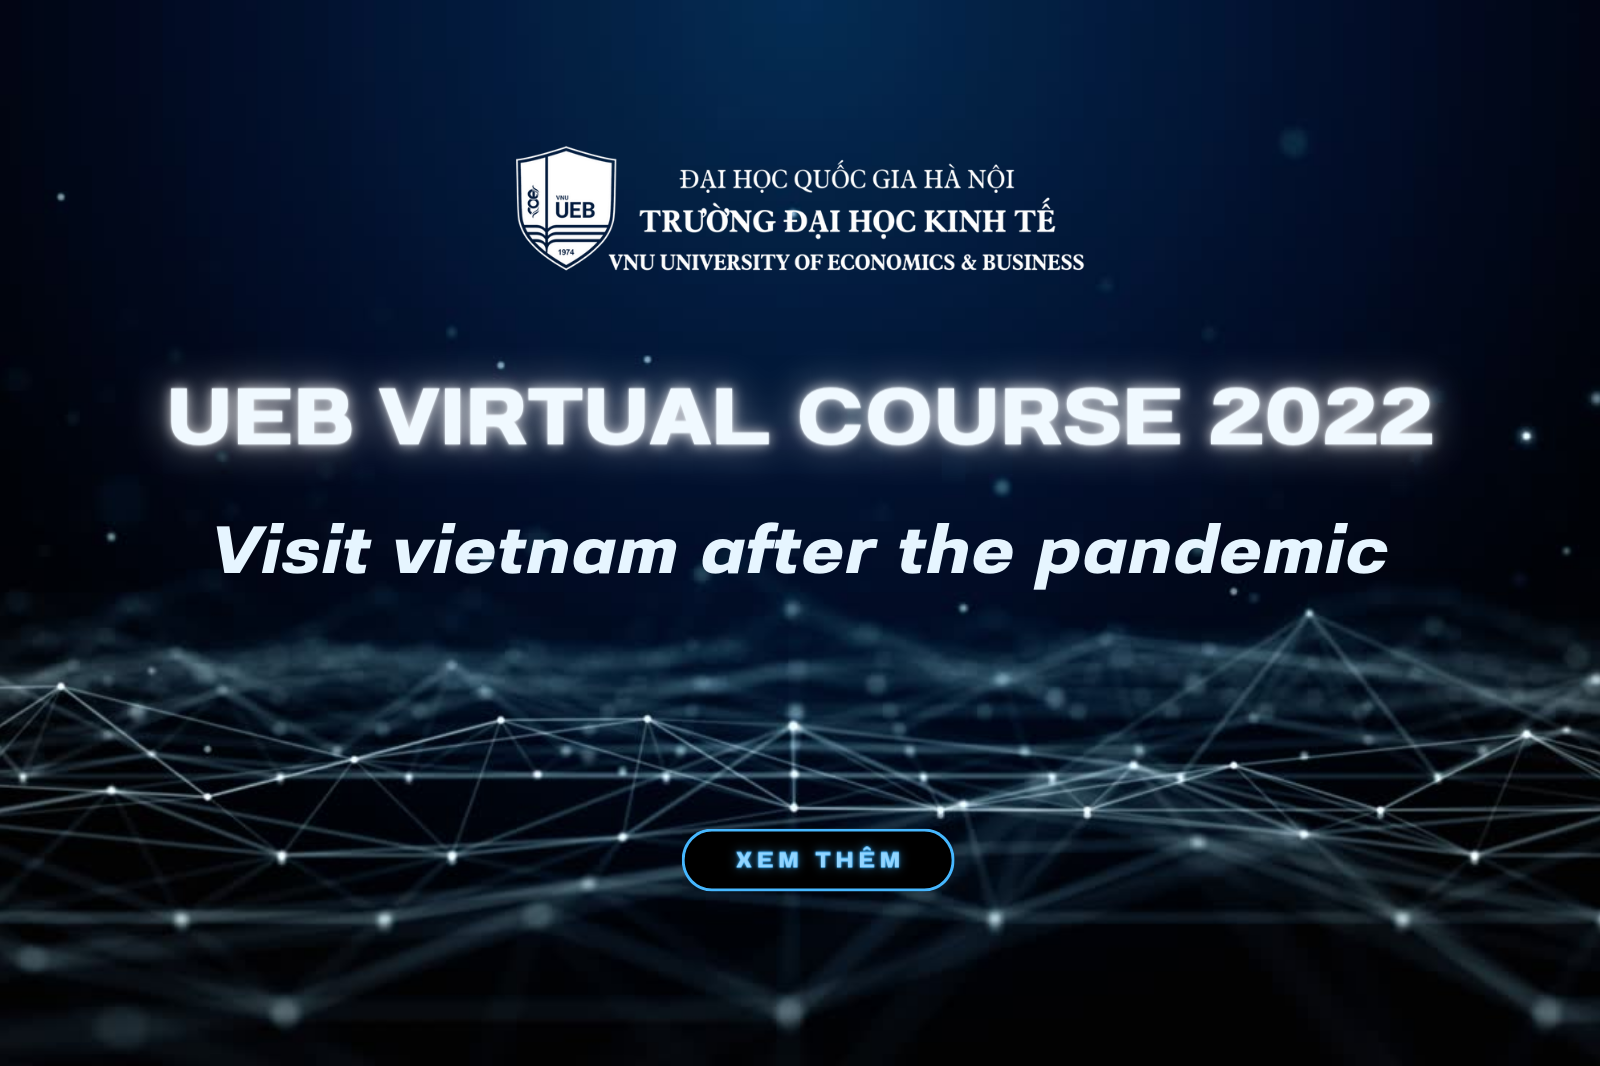 UEB Virtual Course 2022: Từ “ấn tượng ban đầu” tới “kỳ tích vươn lên hậu đại dịch”